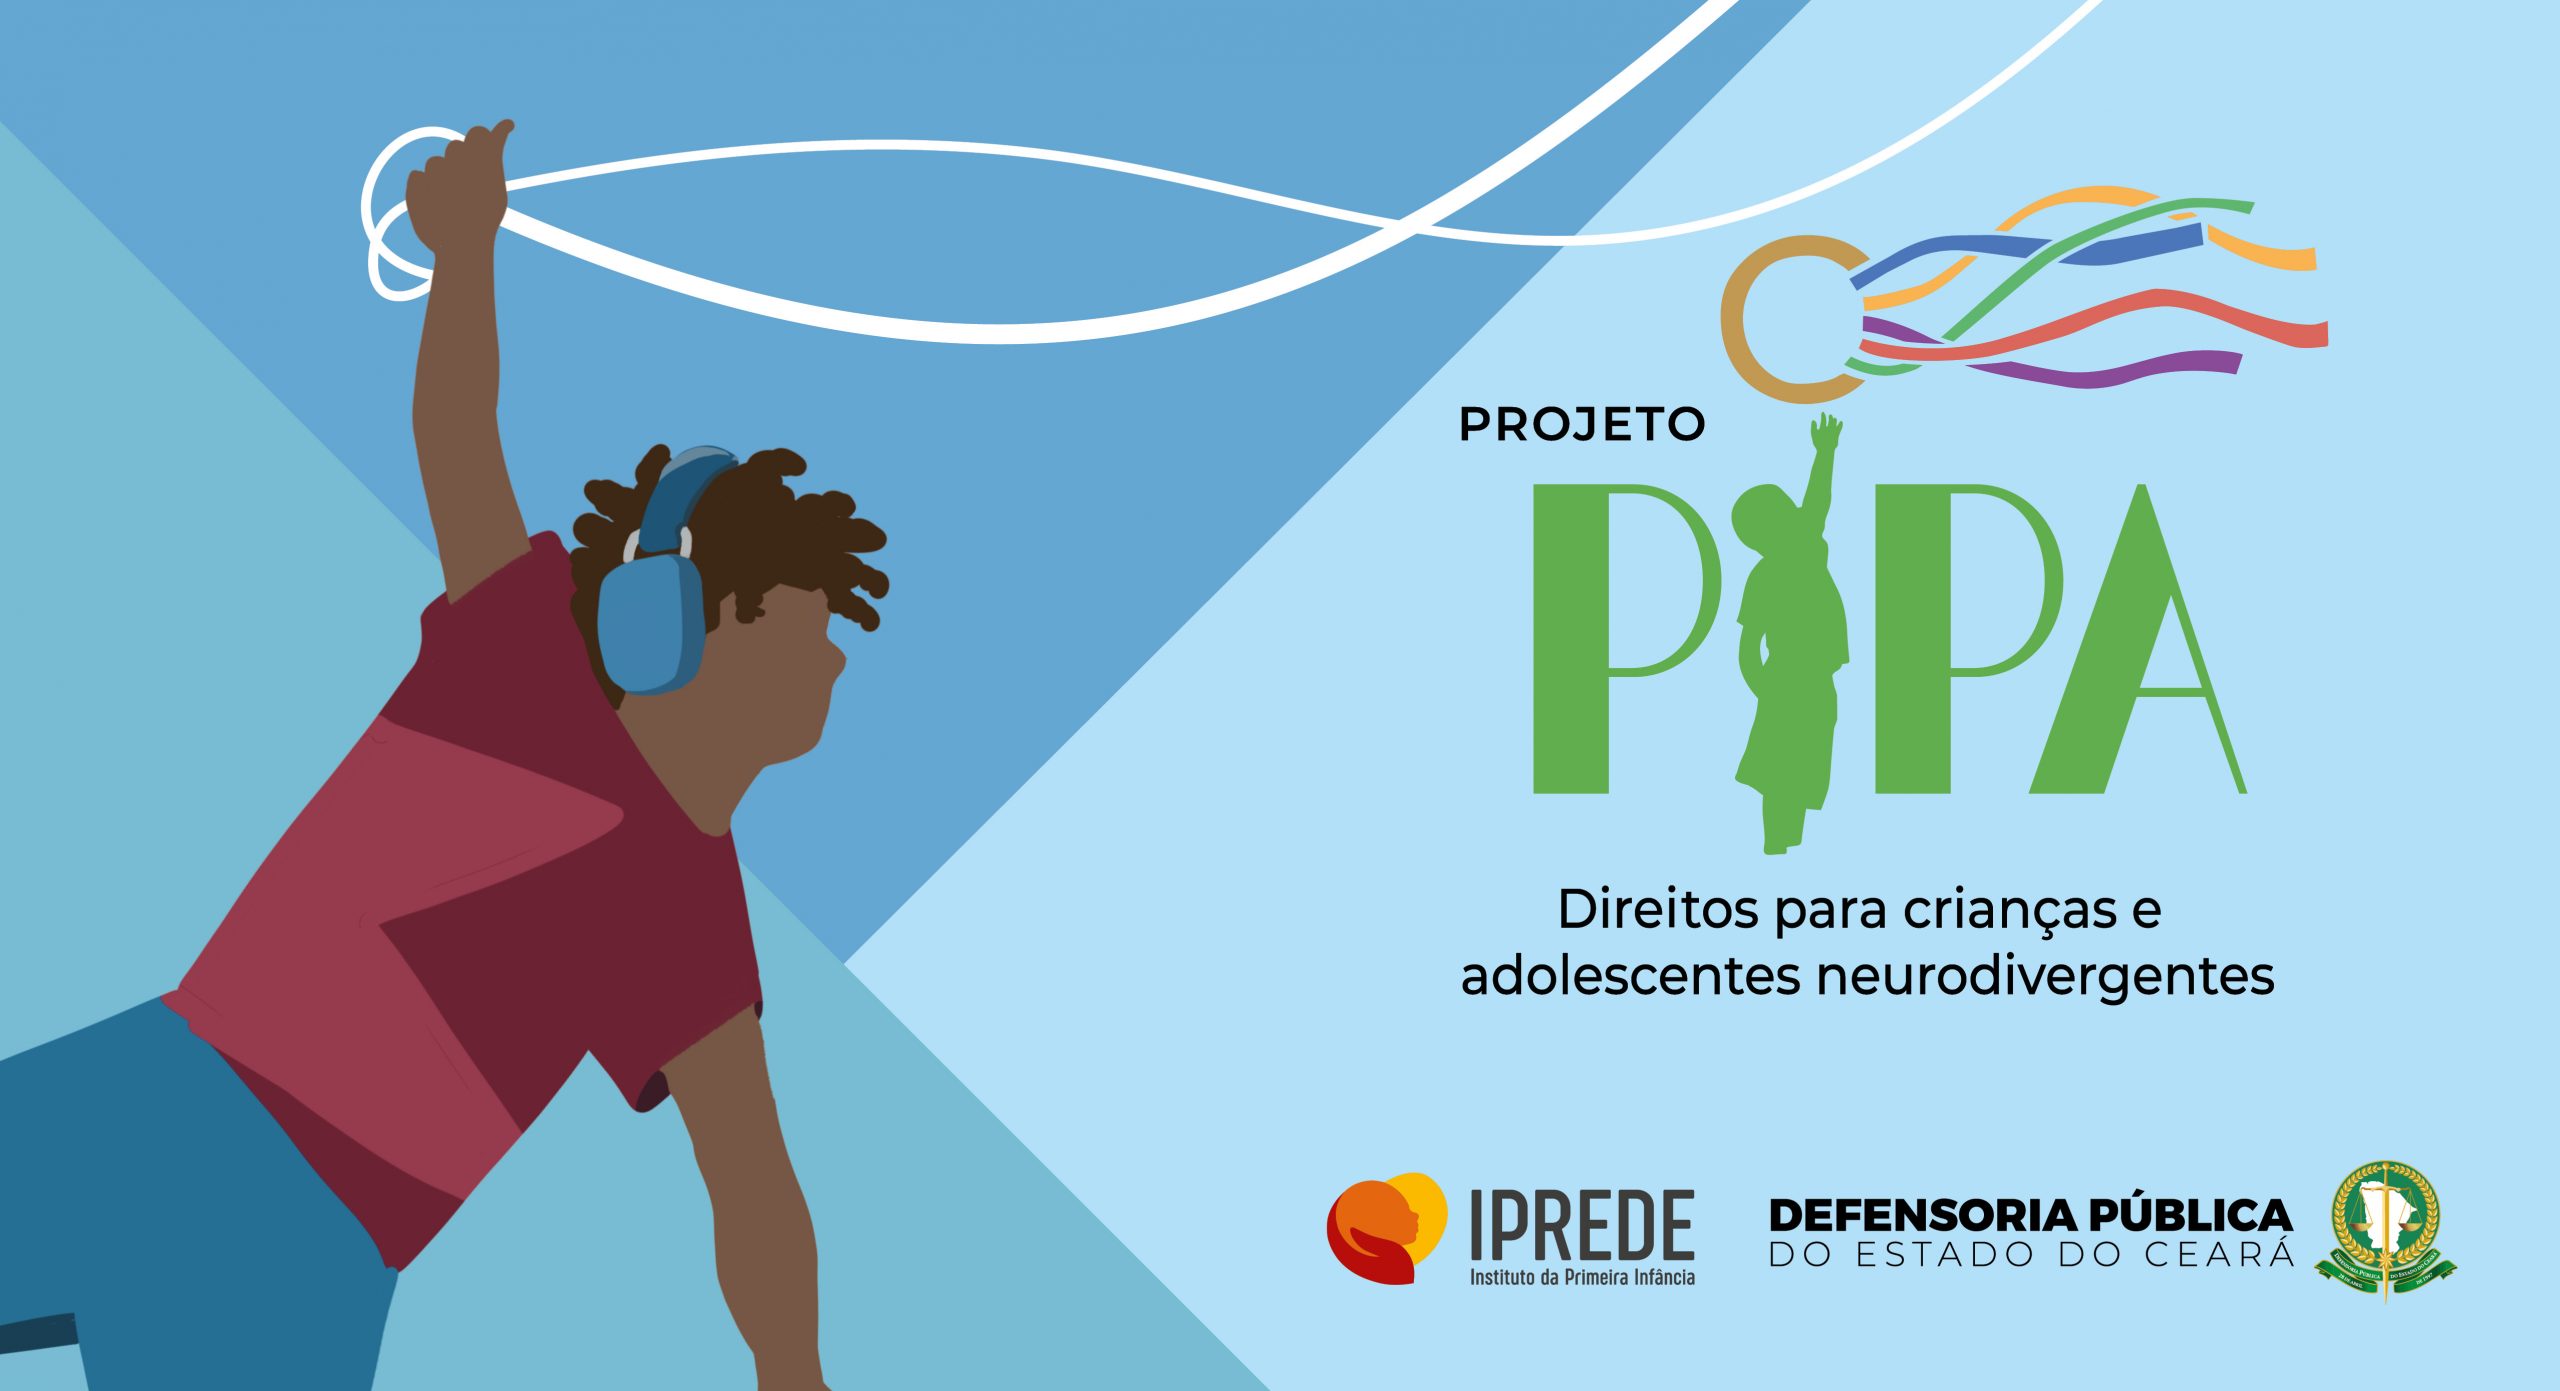 Projeto Pipa: Defensoria lança programa para atender crianças e adolescentes neurodivergentes, no Iprede